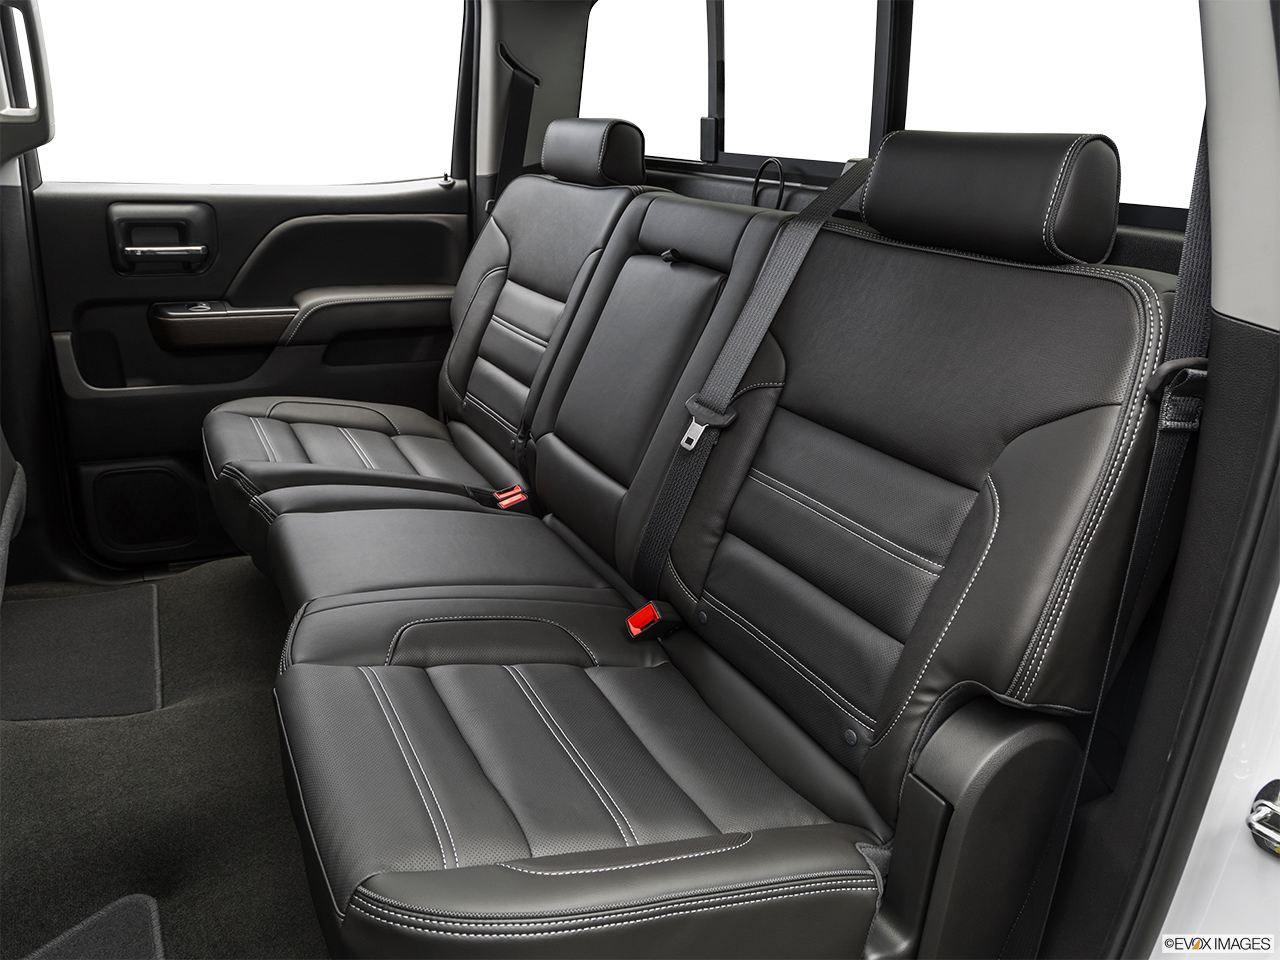 2019 GMC Sierra 2500HD Denali Rear seats from Drivers Side. 